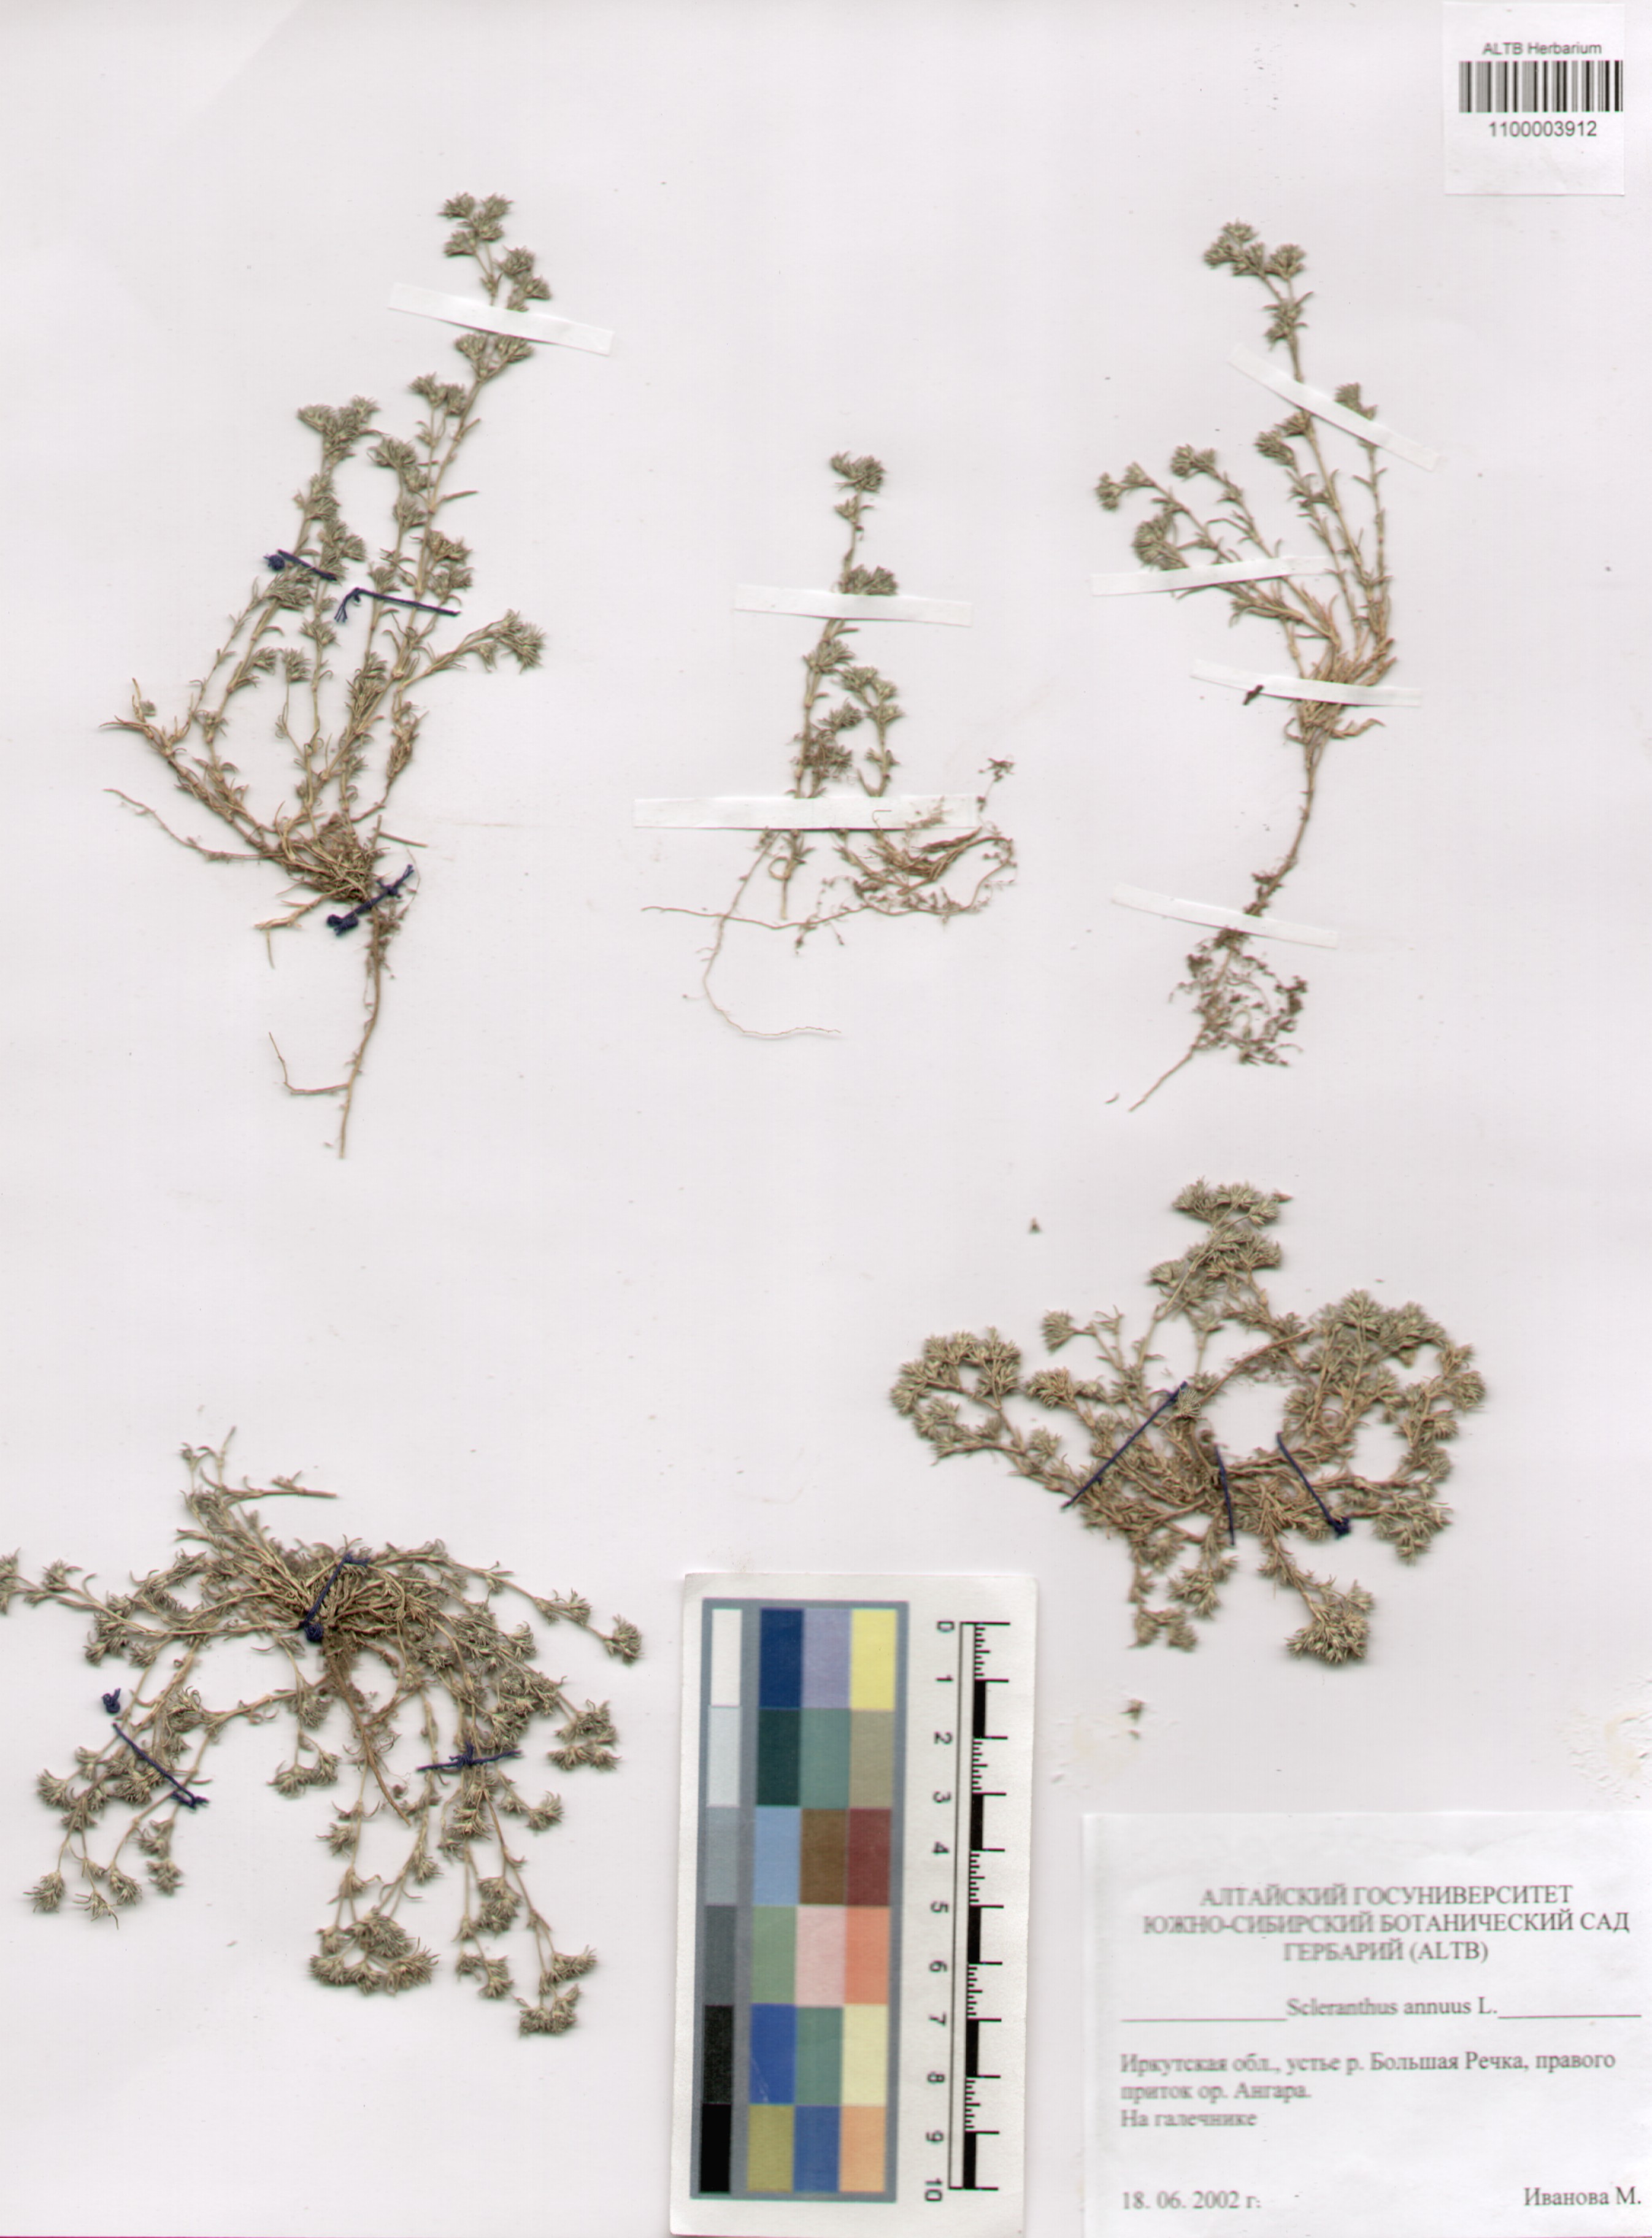 Caryophyllaceae,Scleranthus annuus L.